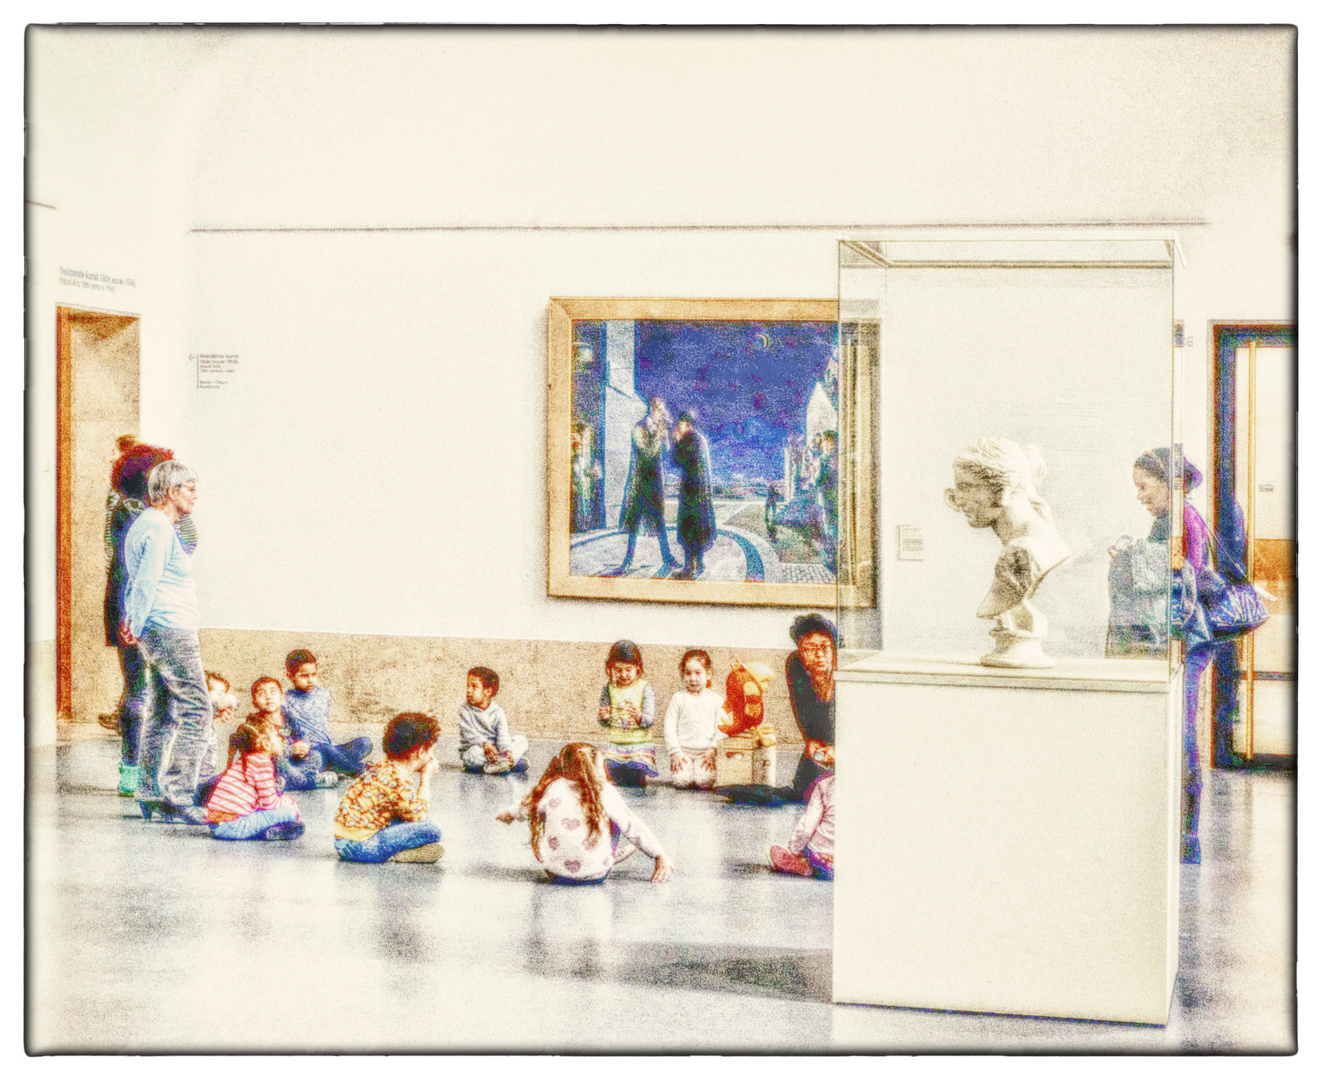 Kinder im Museum - Les enfants au musée